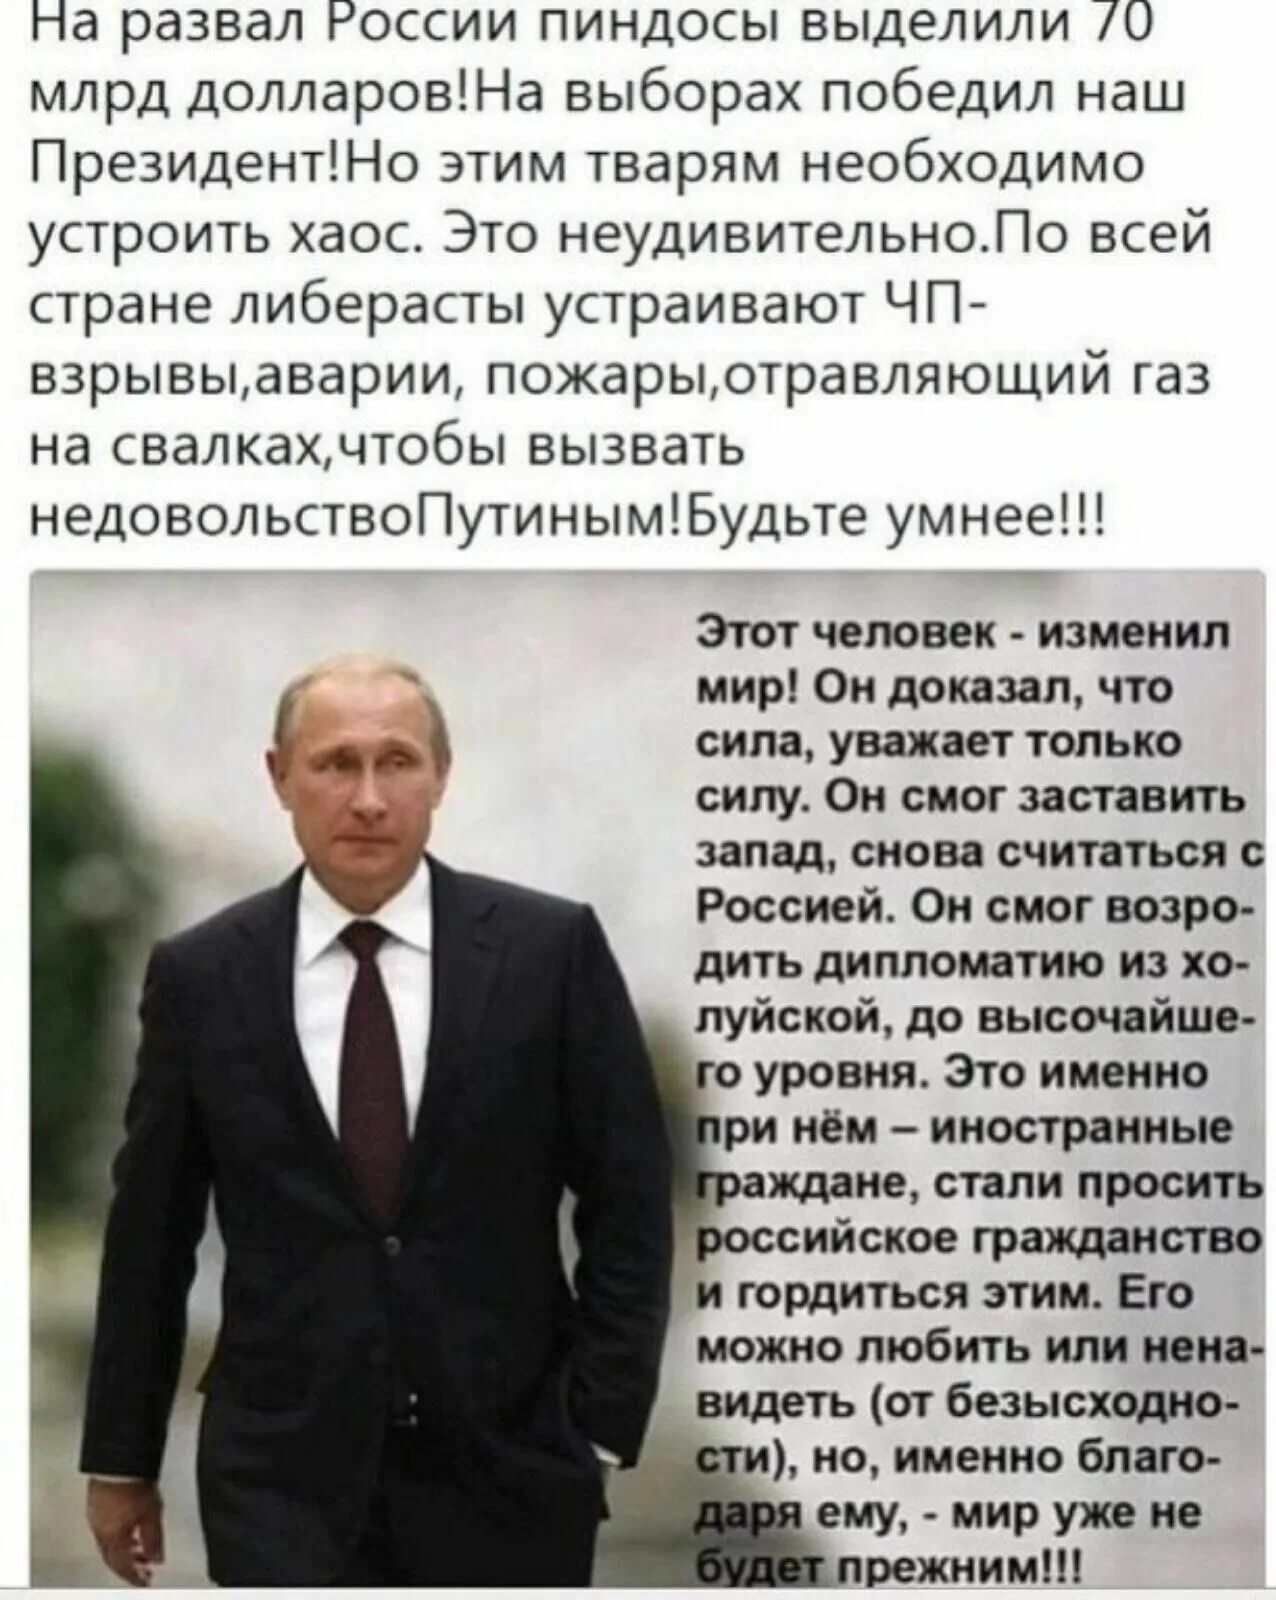 Я горжусь своим президентом. Горжусь нашим президентом. Горжусь Путиным.